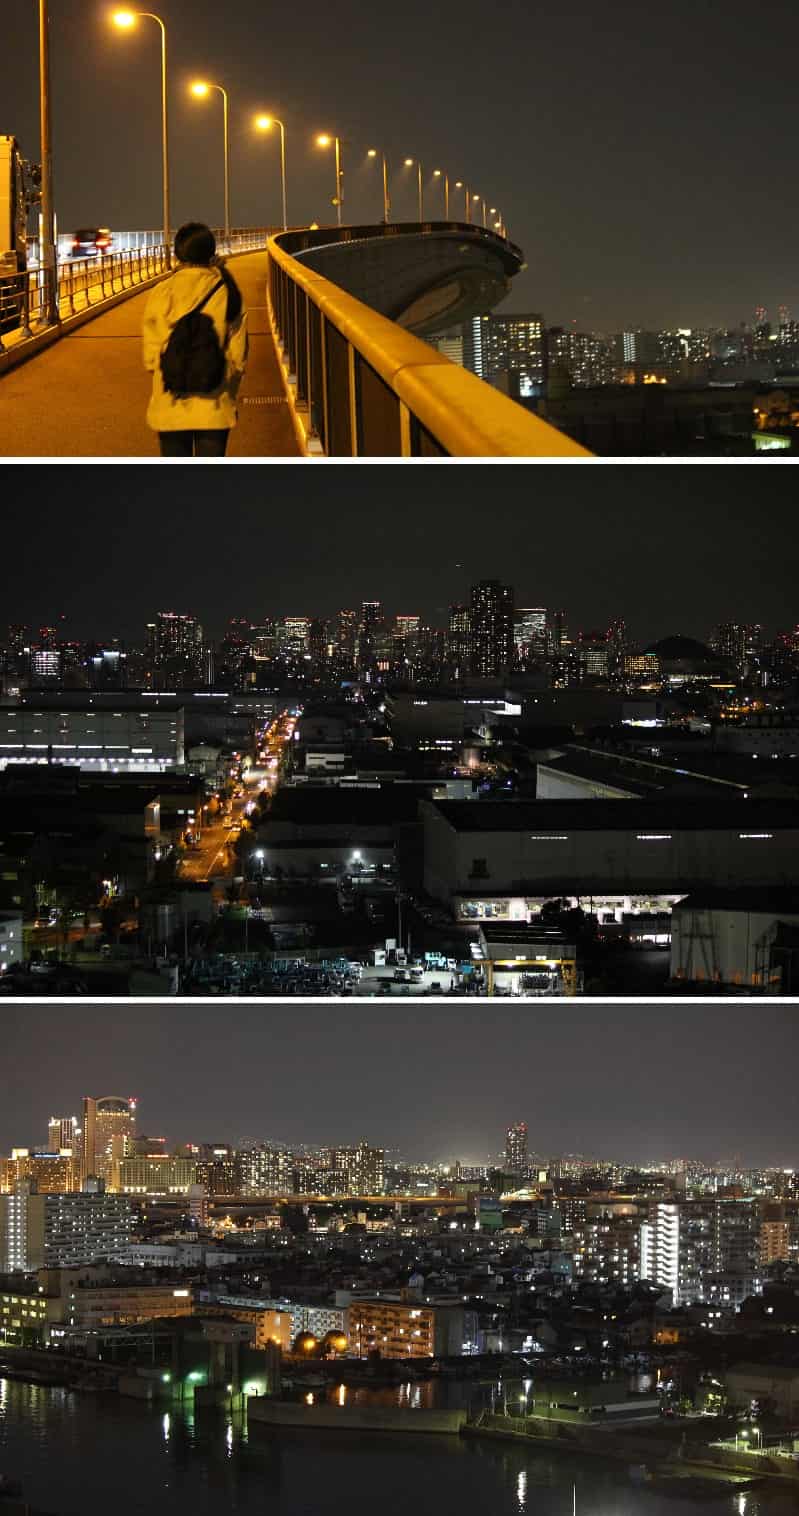 なみはや大橋 夜景と夕日 アクセス 駐車場 大阪のベタ踏み坂 気まぐれファミリー弾丸旅物語